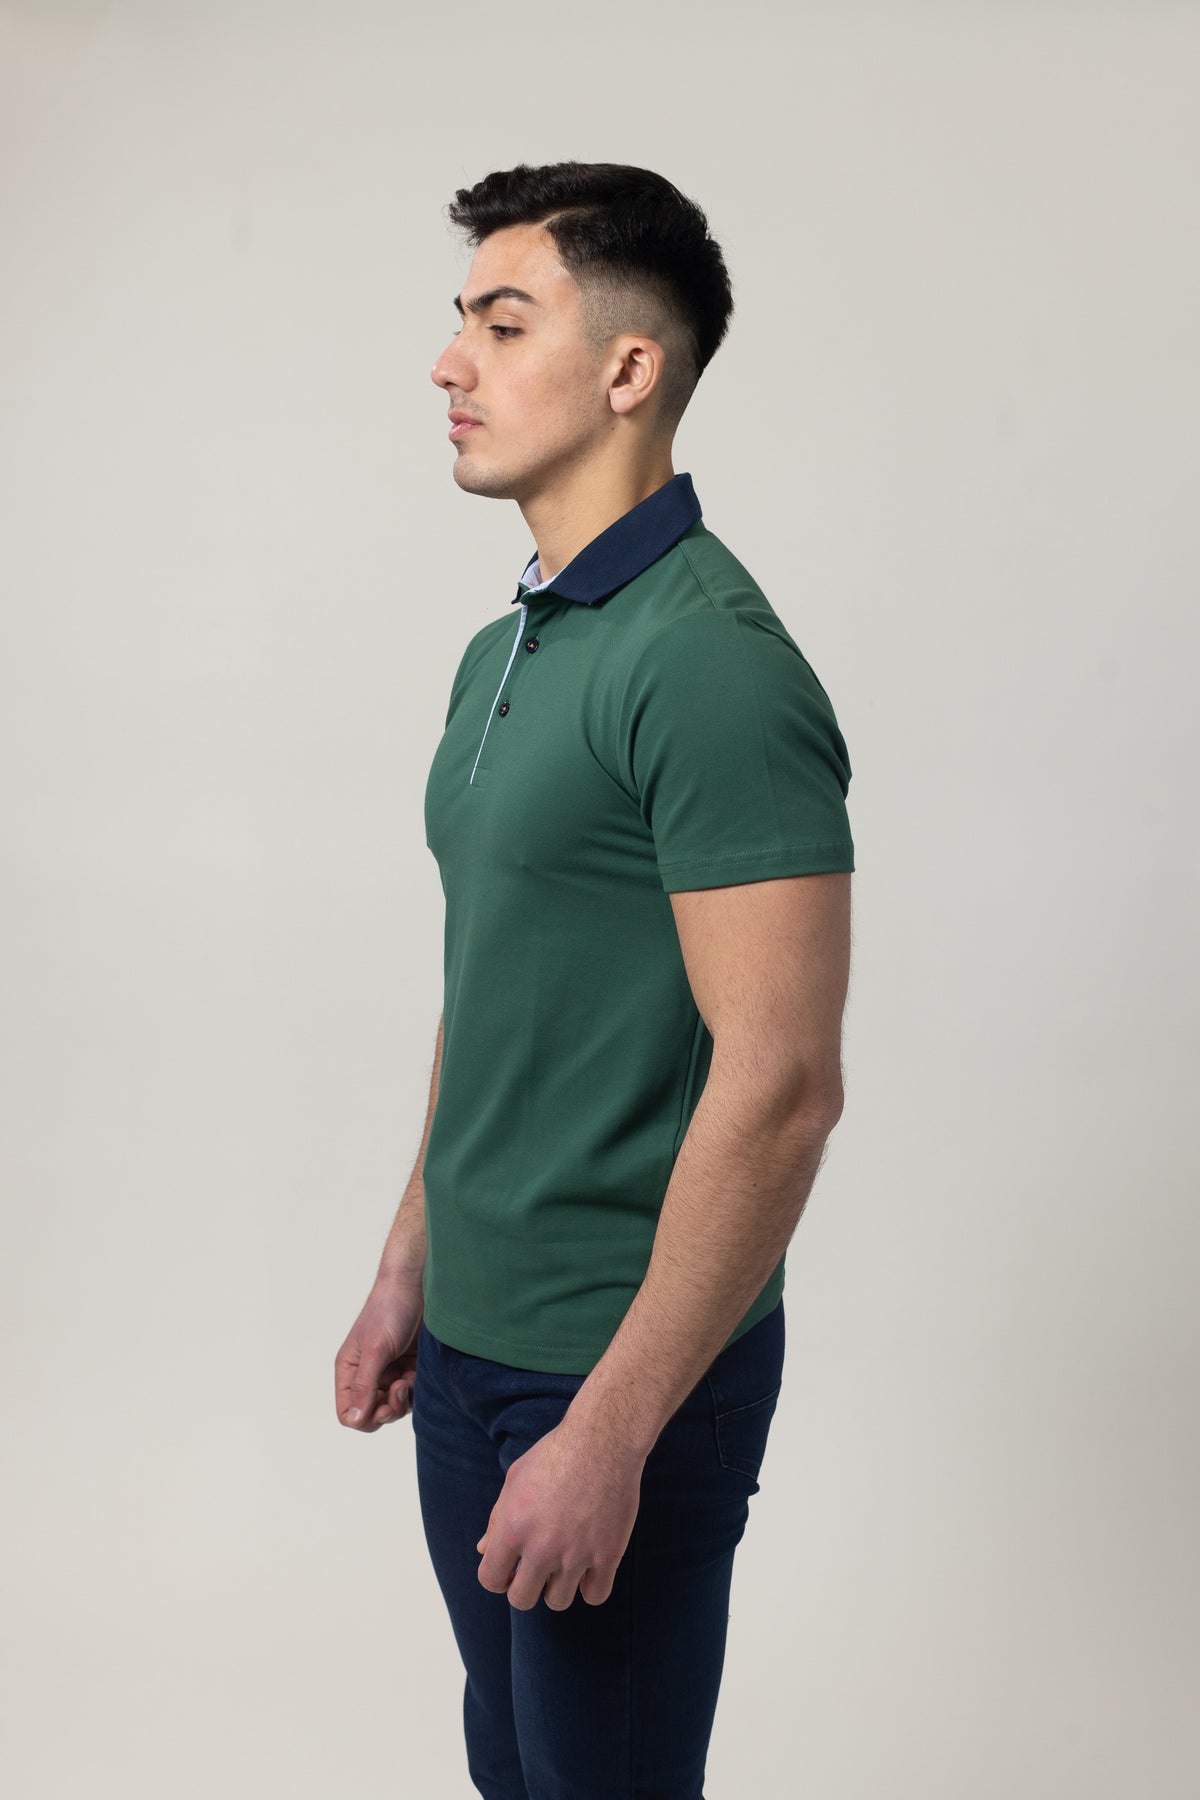 Pique Polo T-Shirt - Green